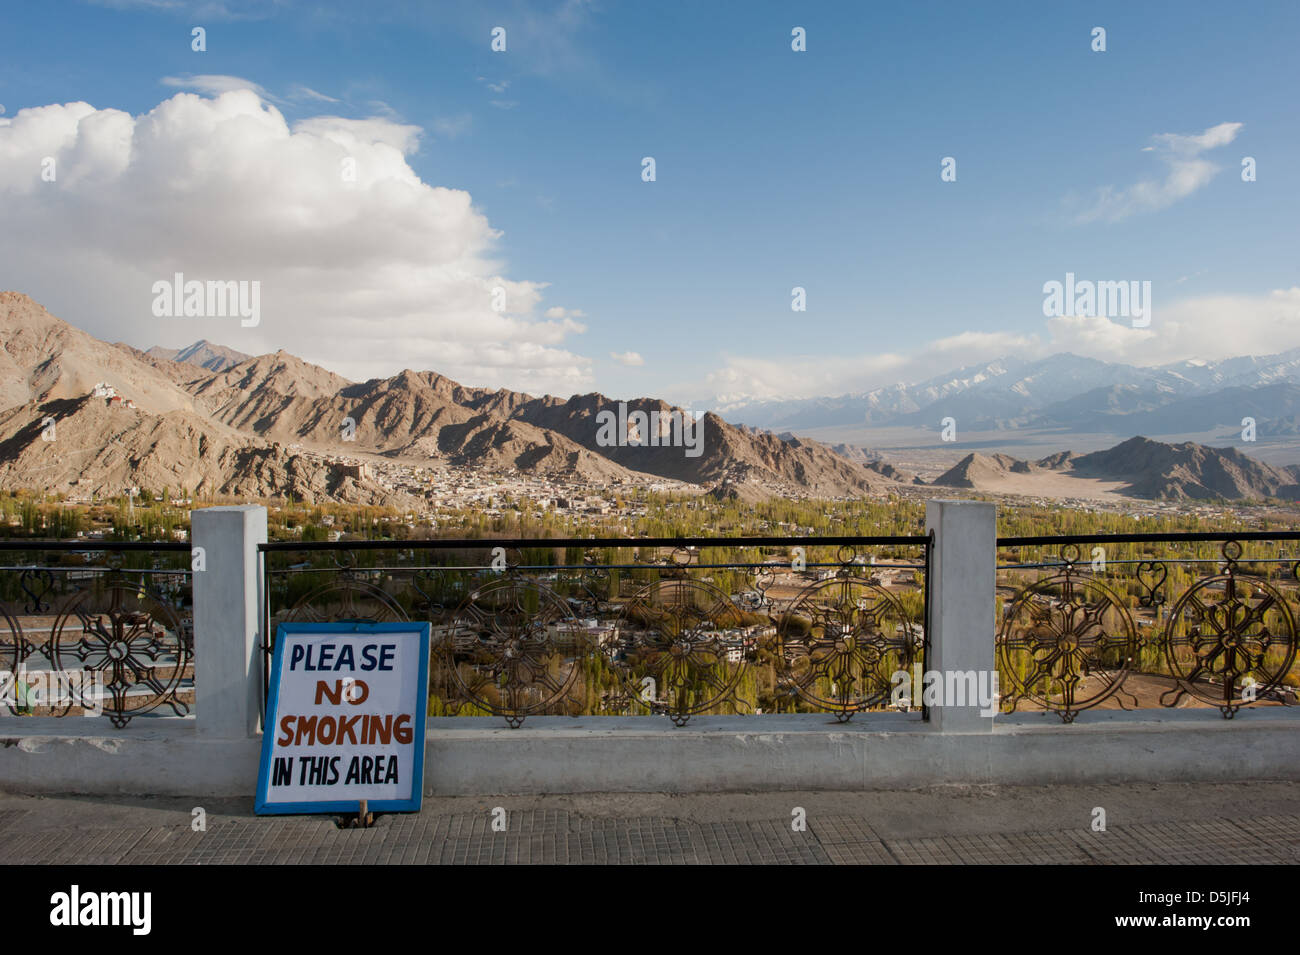 Die Ansicht von Shanti Stupa, Leh, Ladakh, Jammu und Kaschmir. Indien. Stockfoto